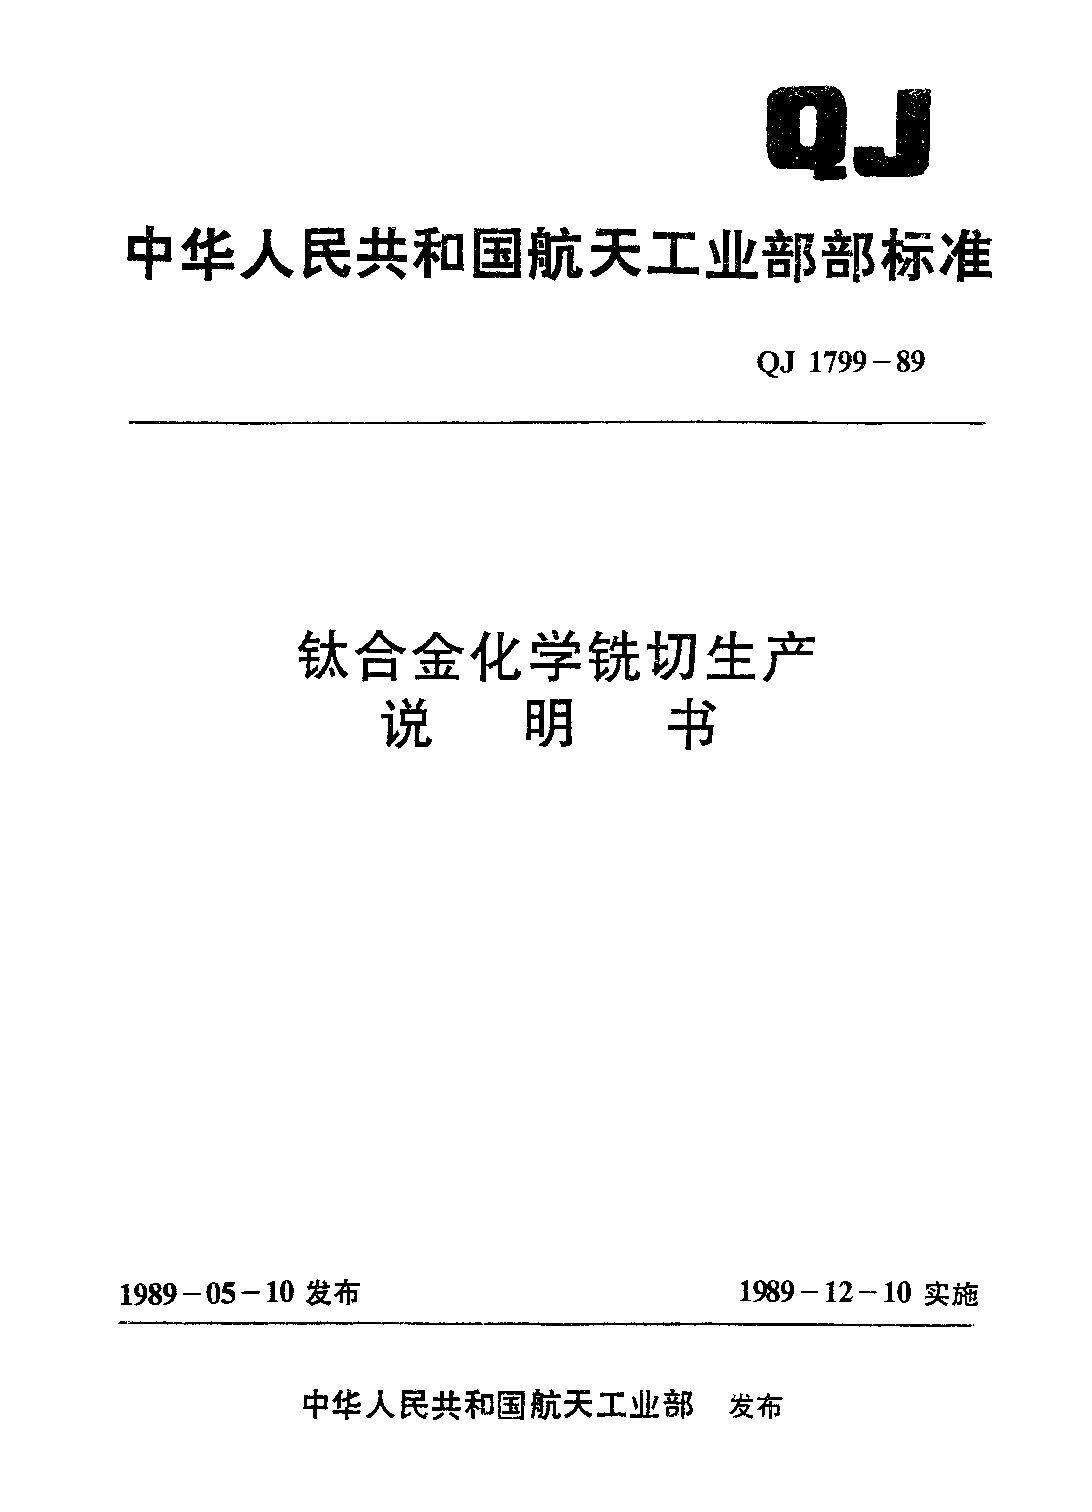 QJ 1799-1989封面图